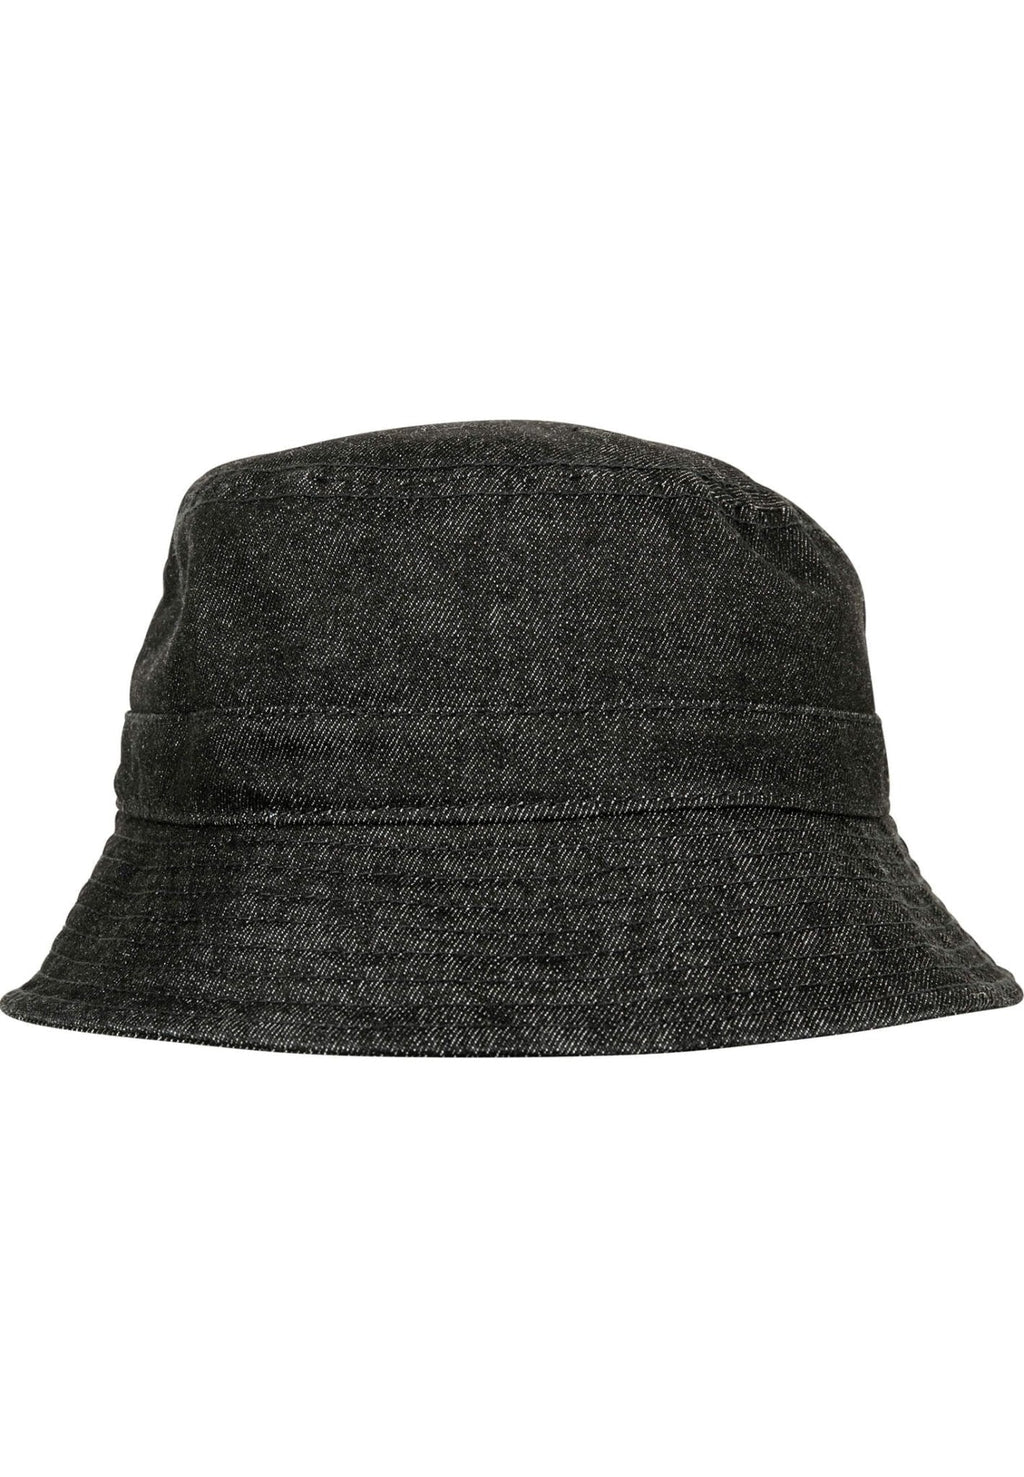 水桶帽牛仔布 - 黑色